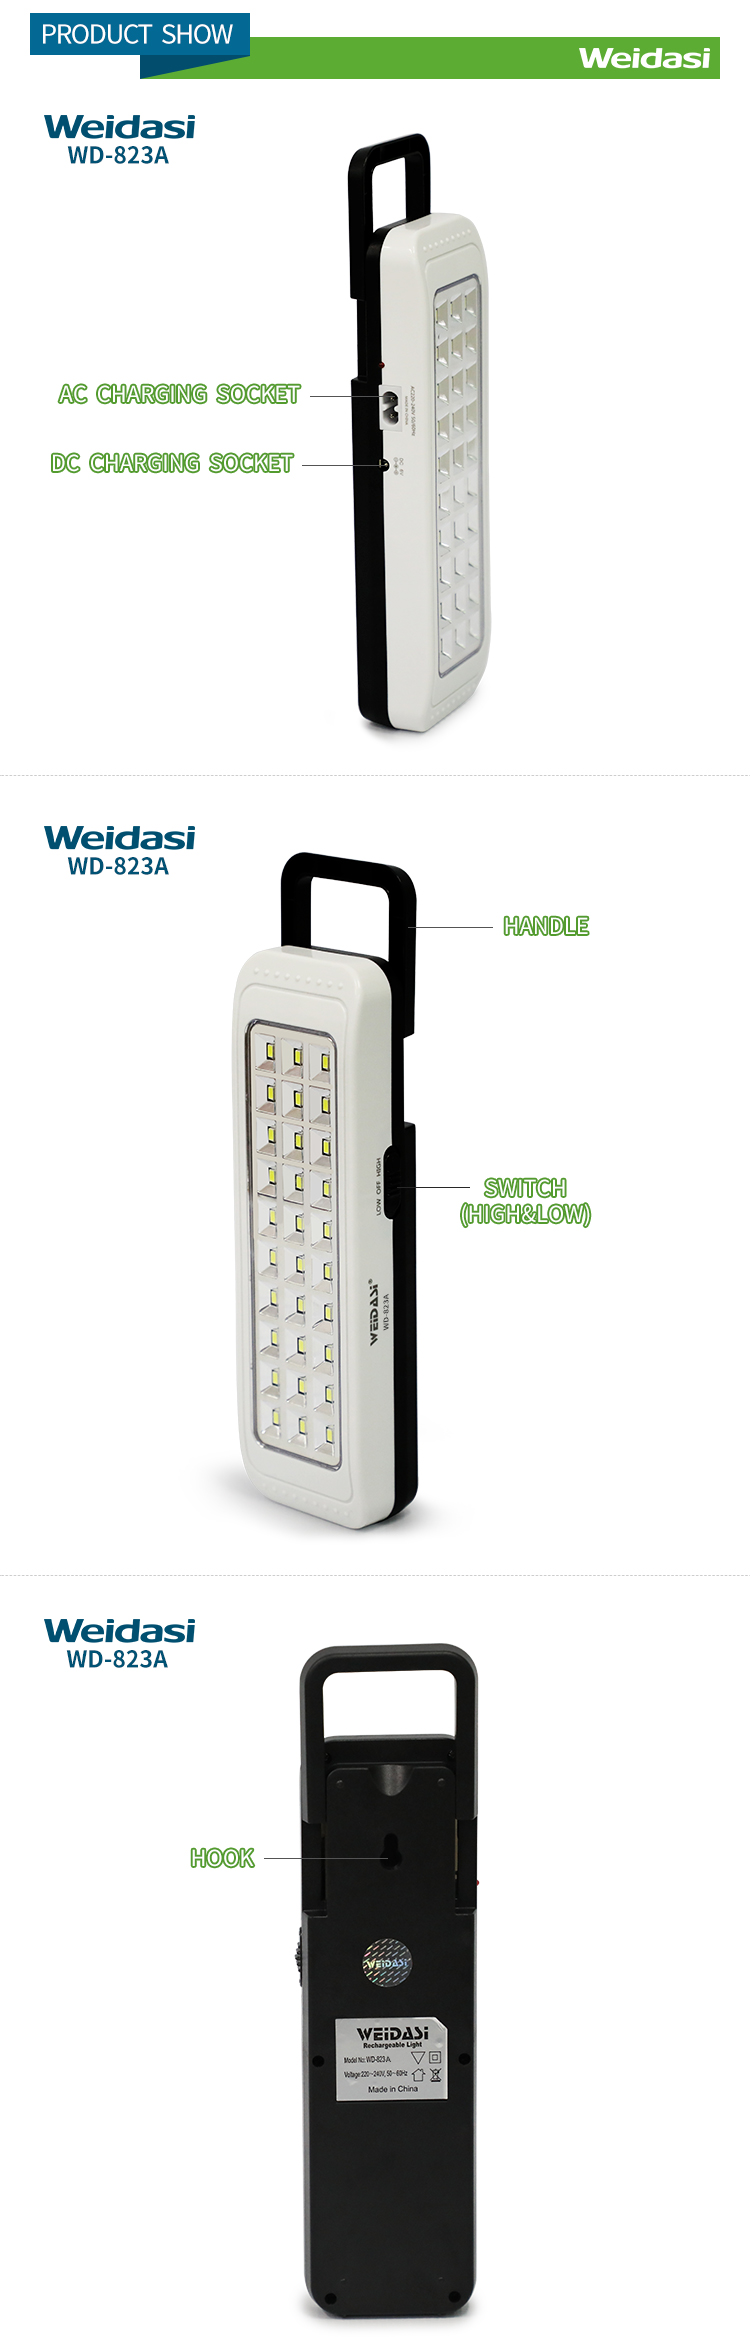 Weidasi WD 823 Emergency light%20(2)